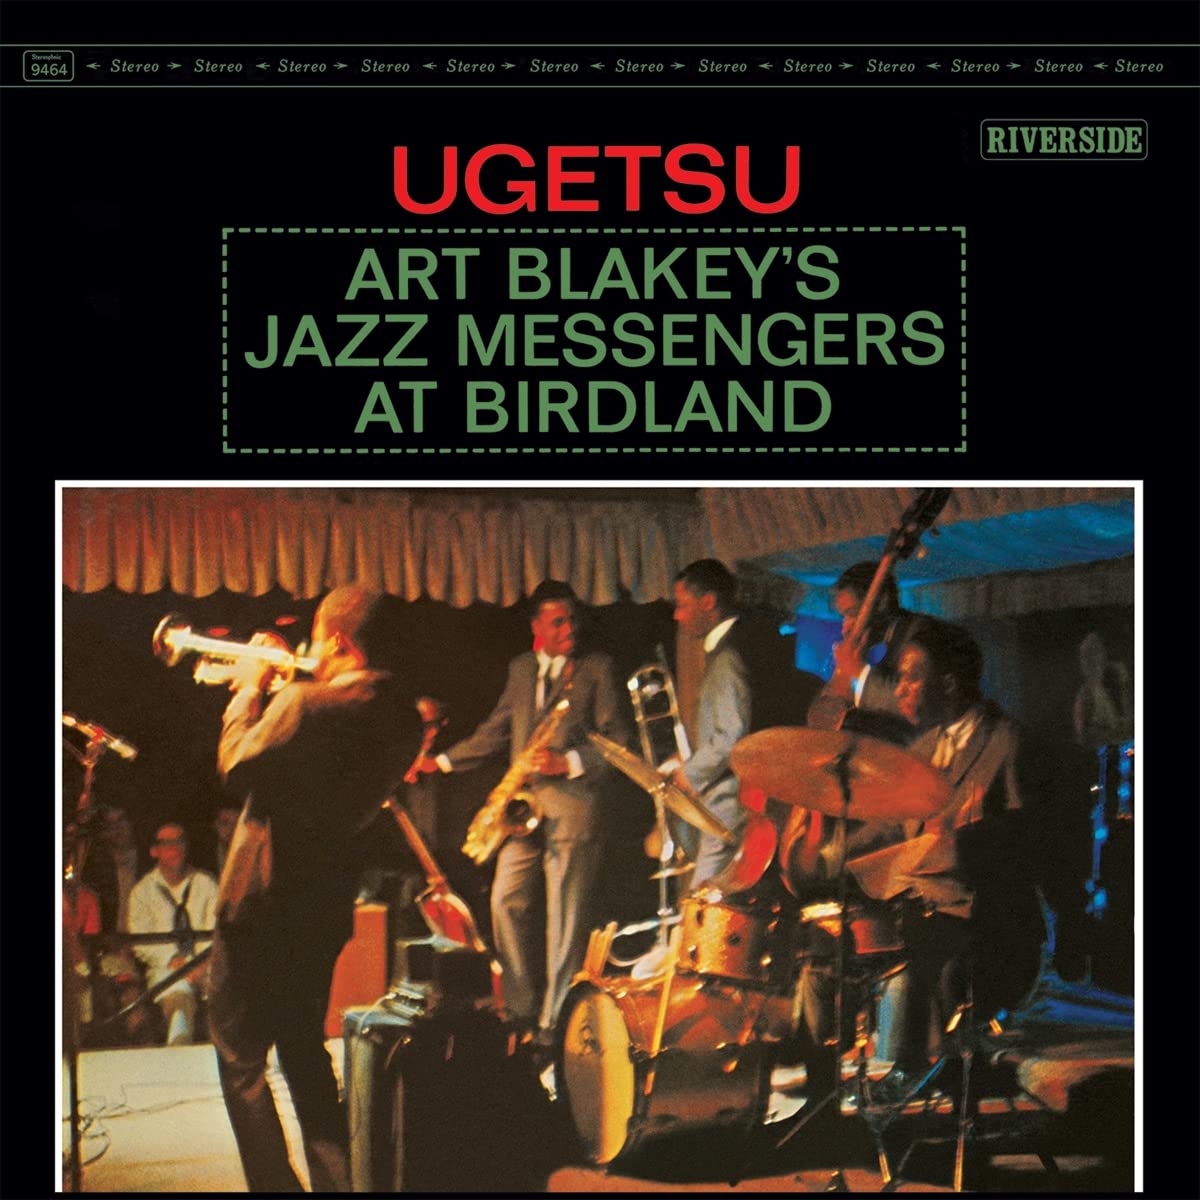 Джаз Universal (Aus) Art Blakey - Ugetsu (Black Vinyl LP) кофеварки эспрессо smeg капельная кофеварка стиль 50 х годов кремовая